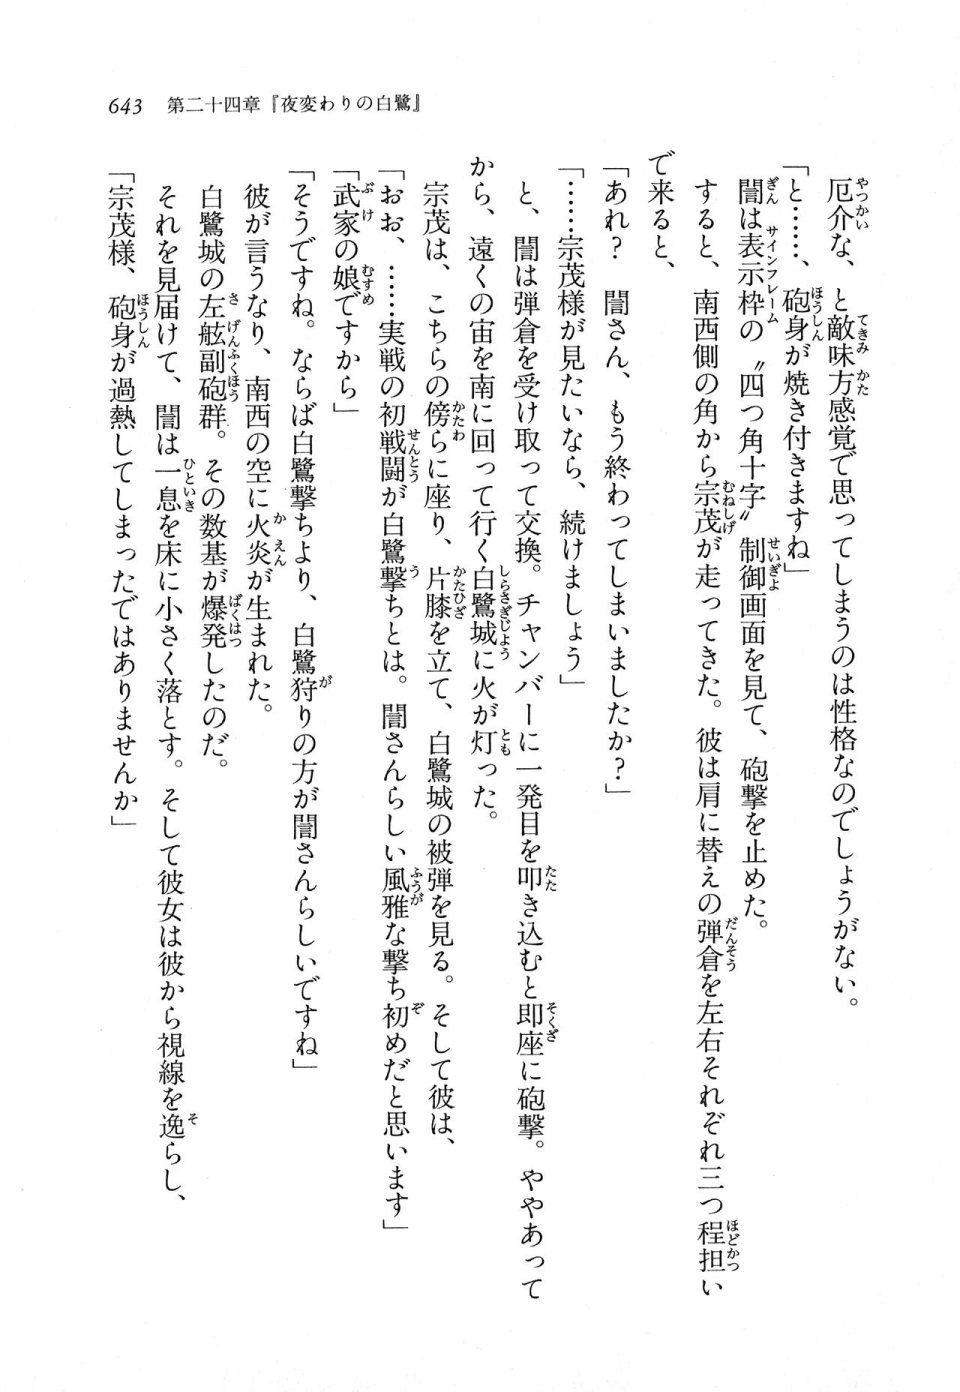 Kyoukai Senjou no Horizon LN Vol 11(5A) - Photo #643